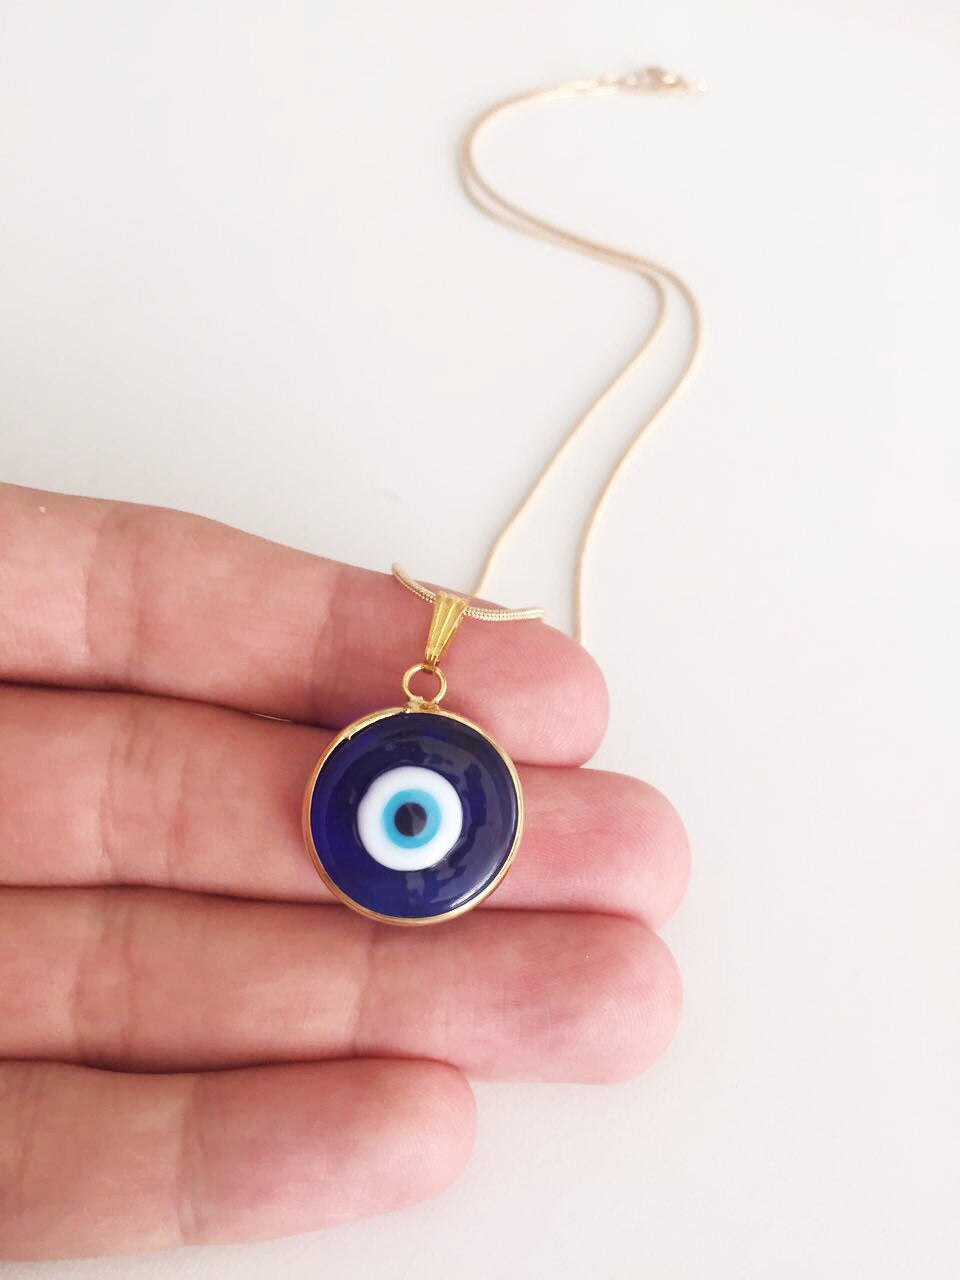 Blue Evil Eye Murano Necklace, Glass Evil Eye Bead Handmade